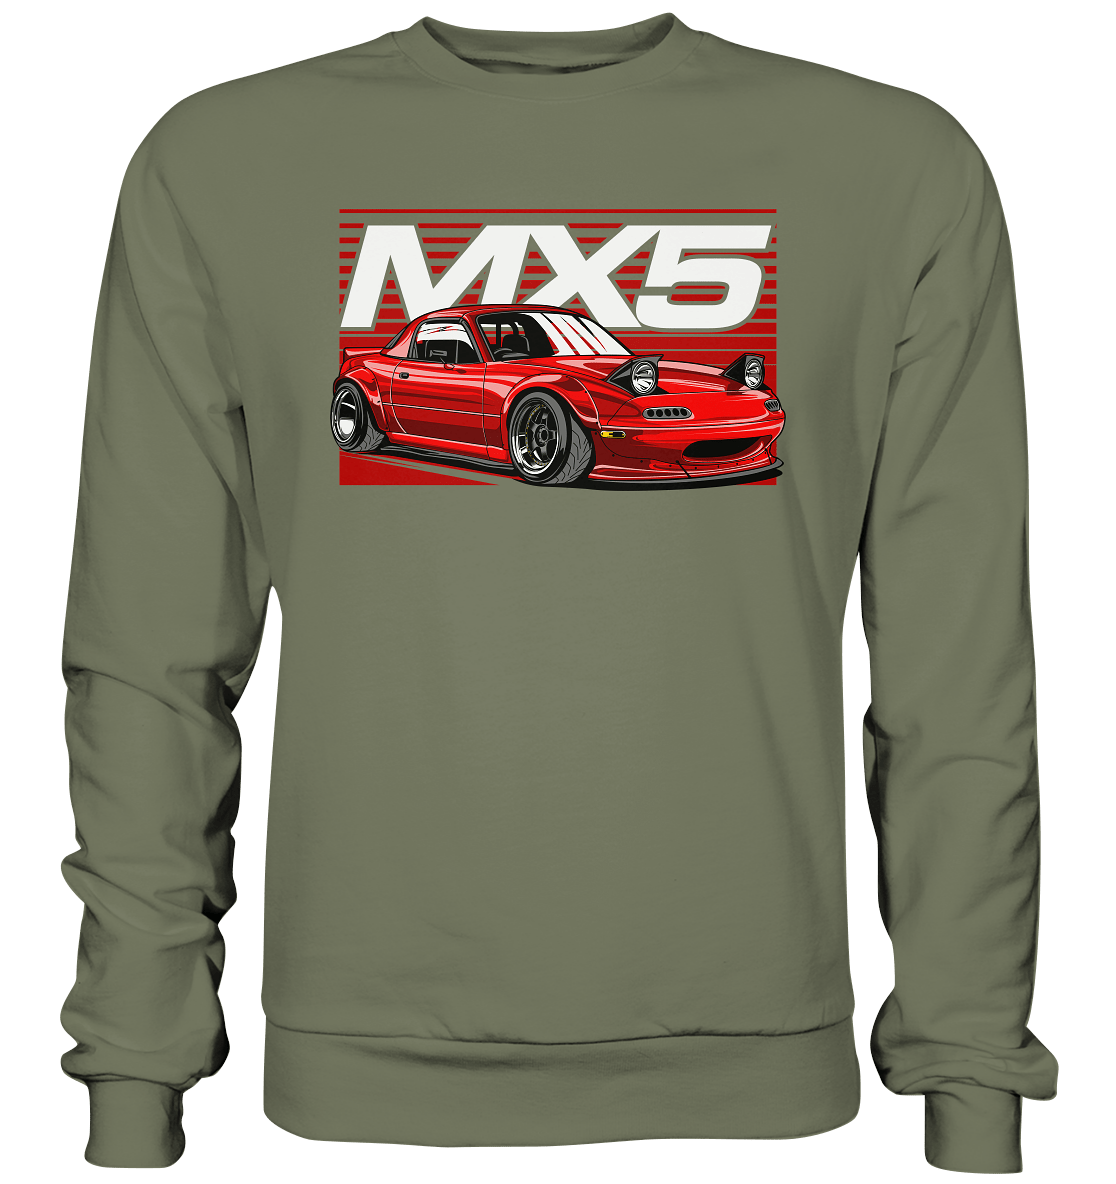 Widebody Mazda MX5 - Premium Sweatshirt - MotoMerch.de